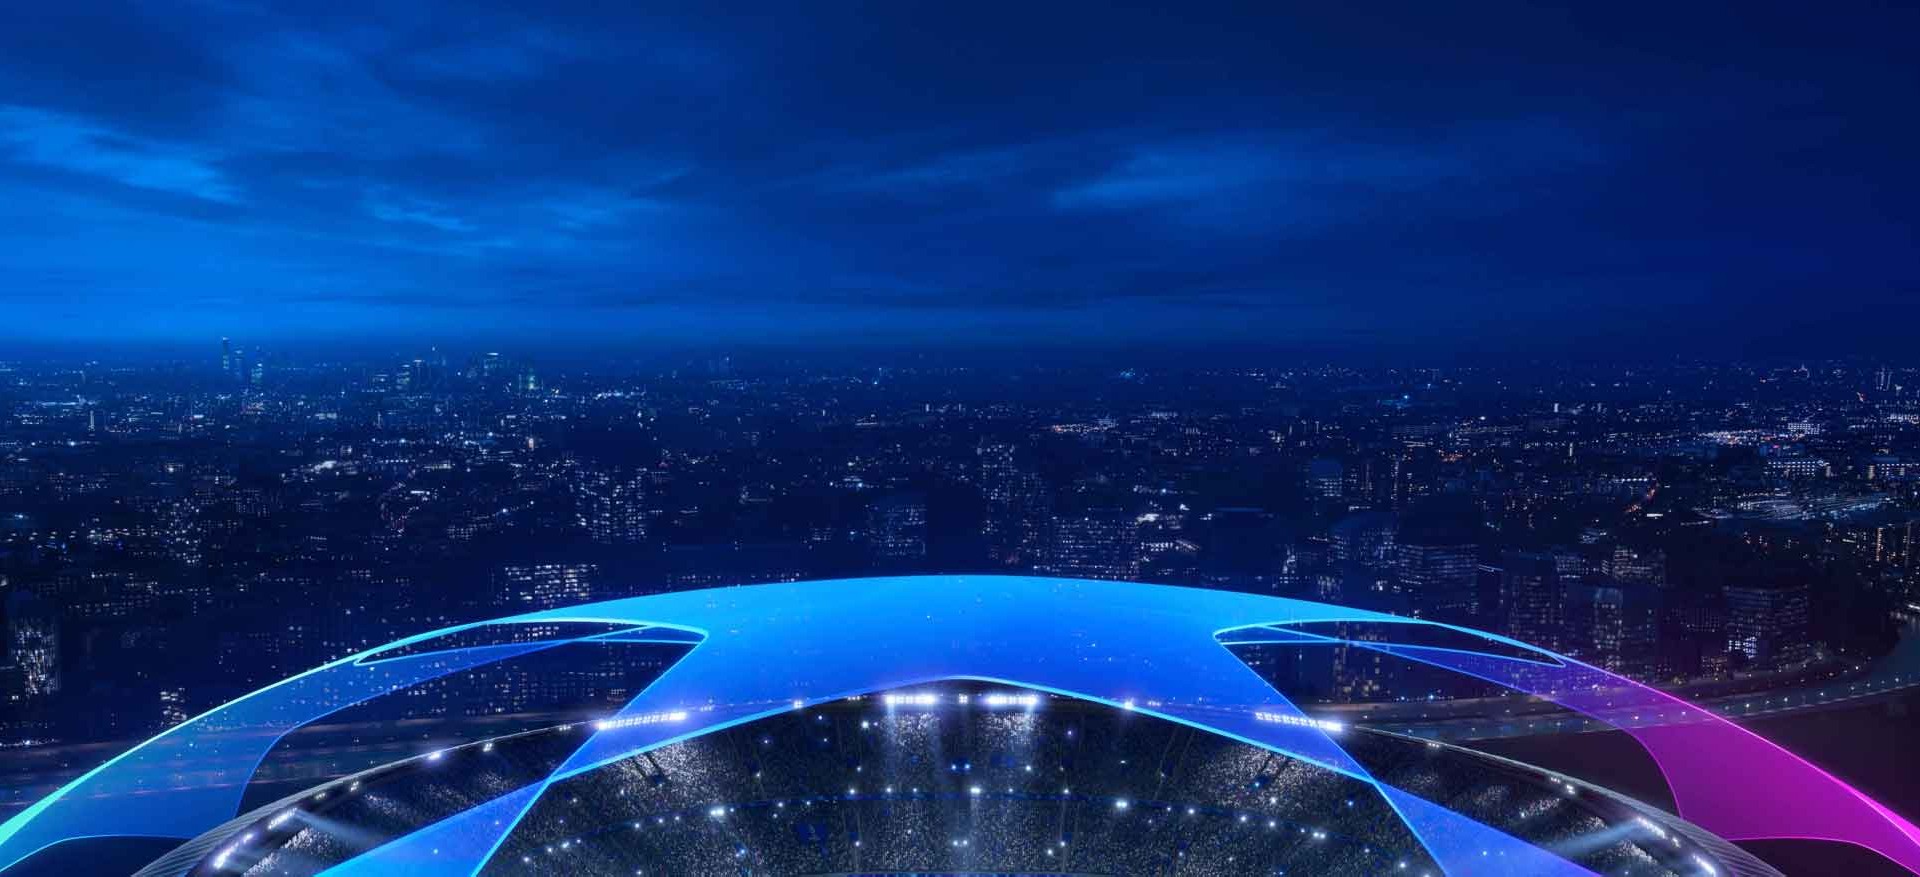 Champions League 2022/23: saiba onde ver os jogos da semana na TV